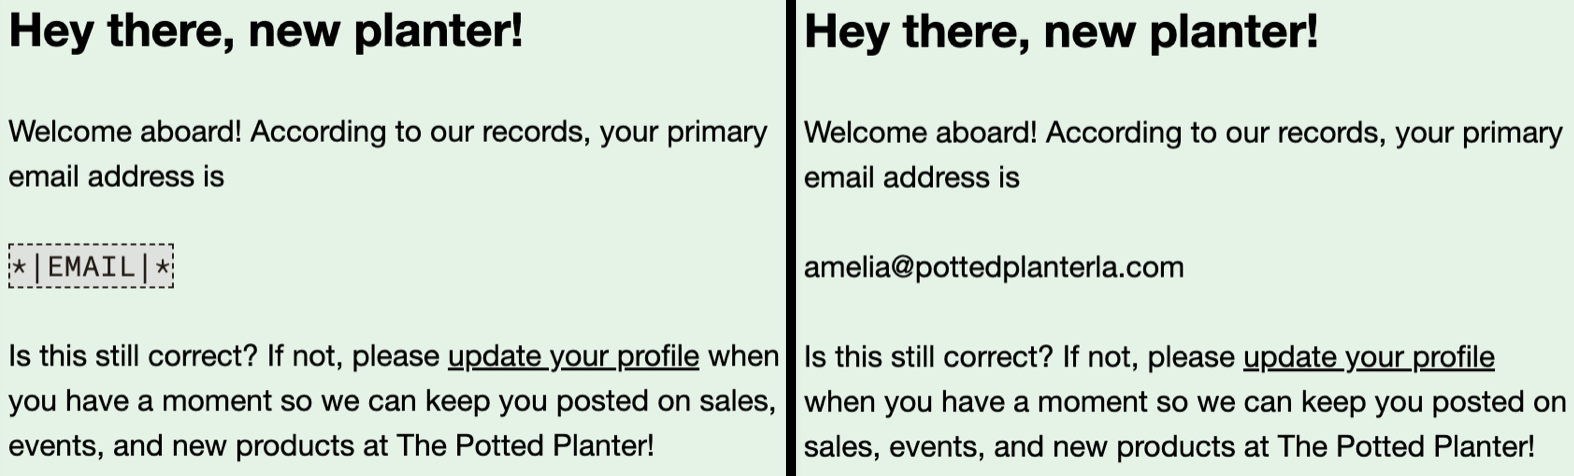 immagine di confronto del merge tag in una bozza di email e un merge tag in un’anteprima dal vivo